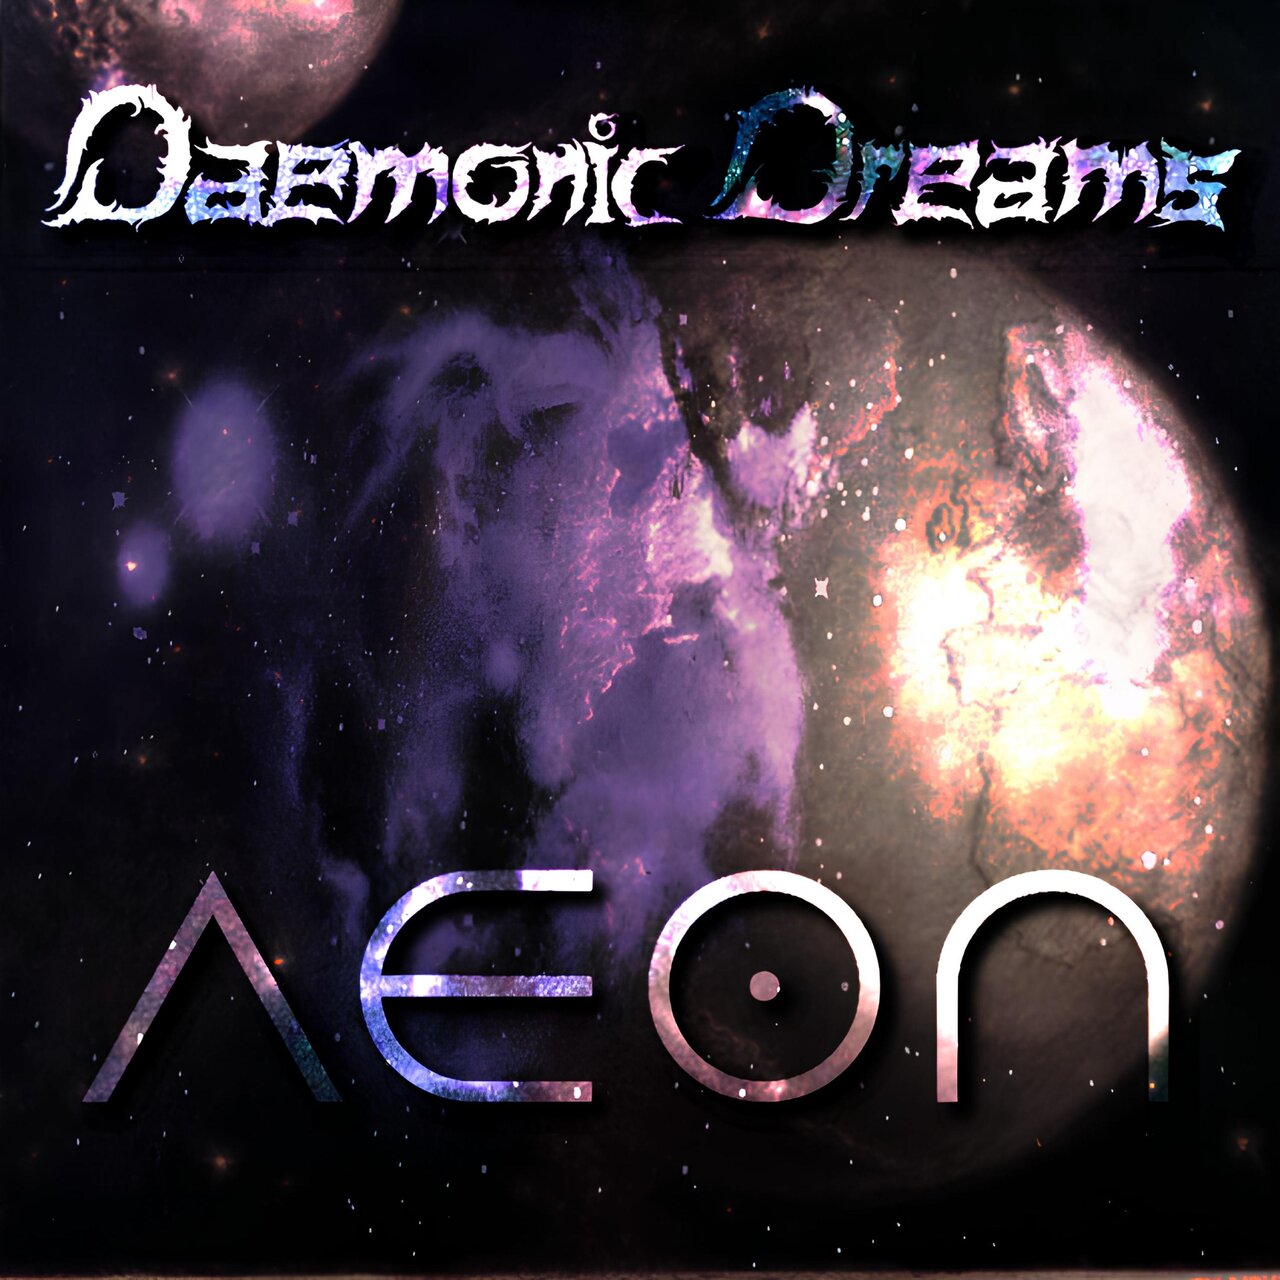 Demo dream